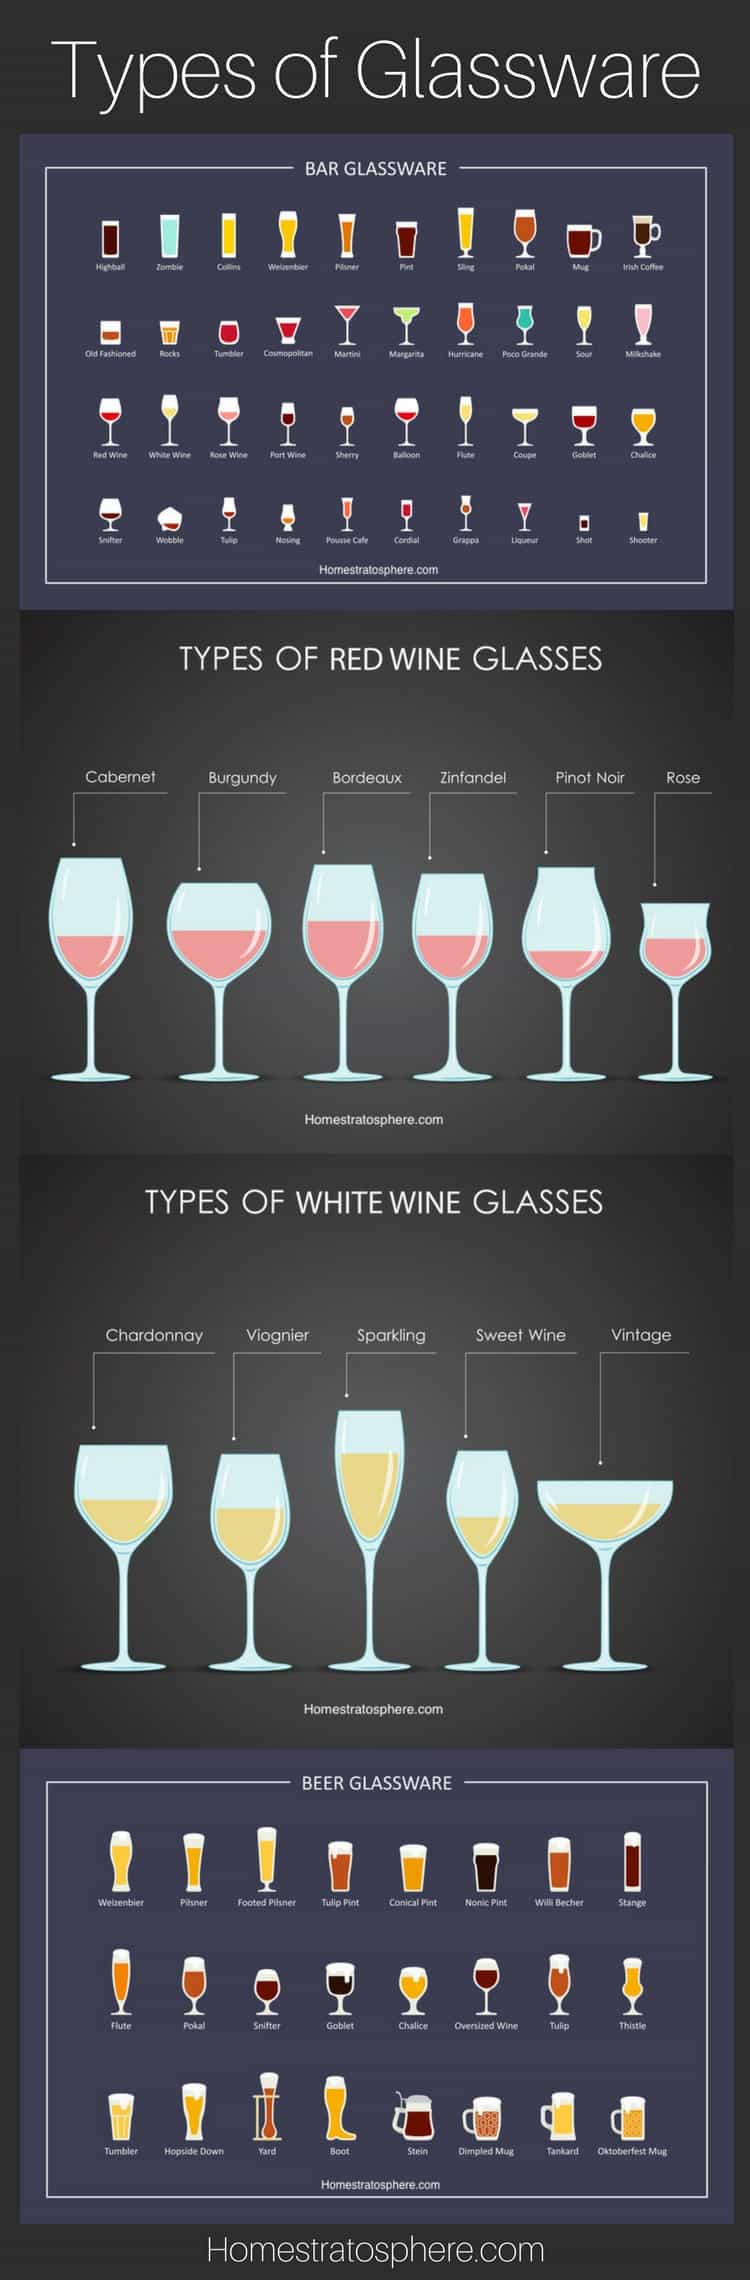 图表:玻璃器皿的种类